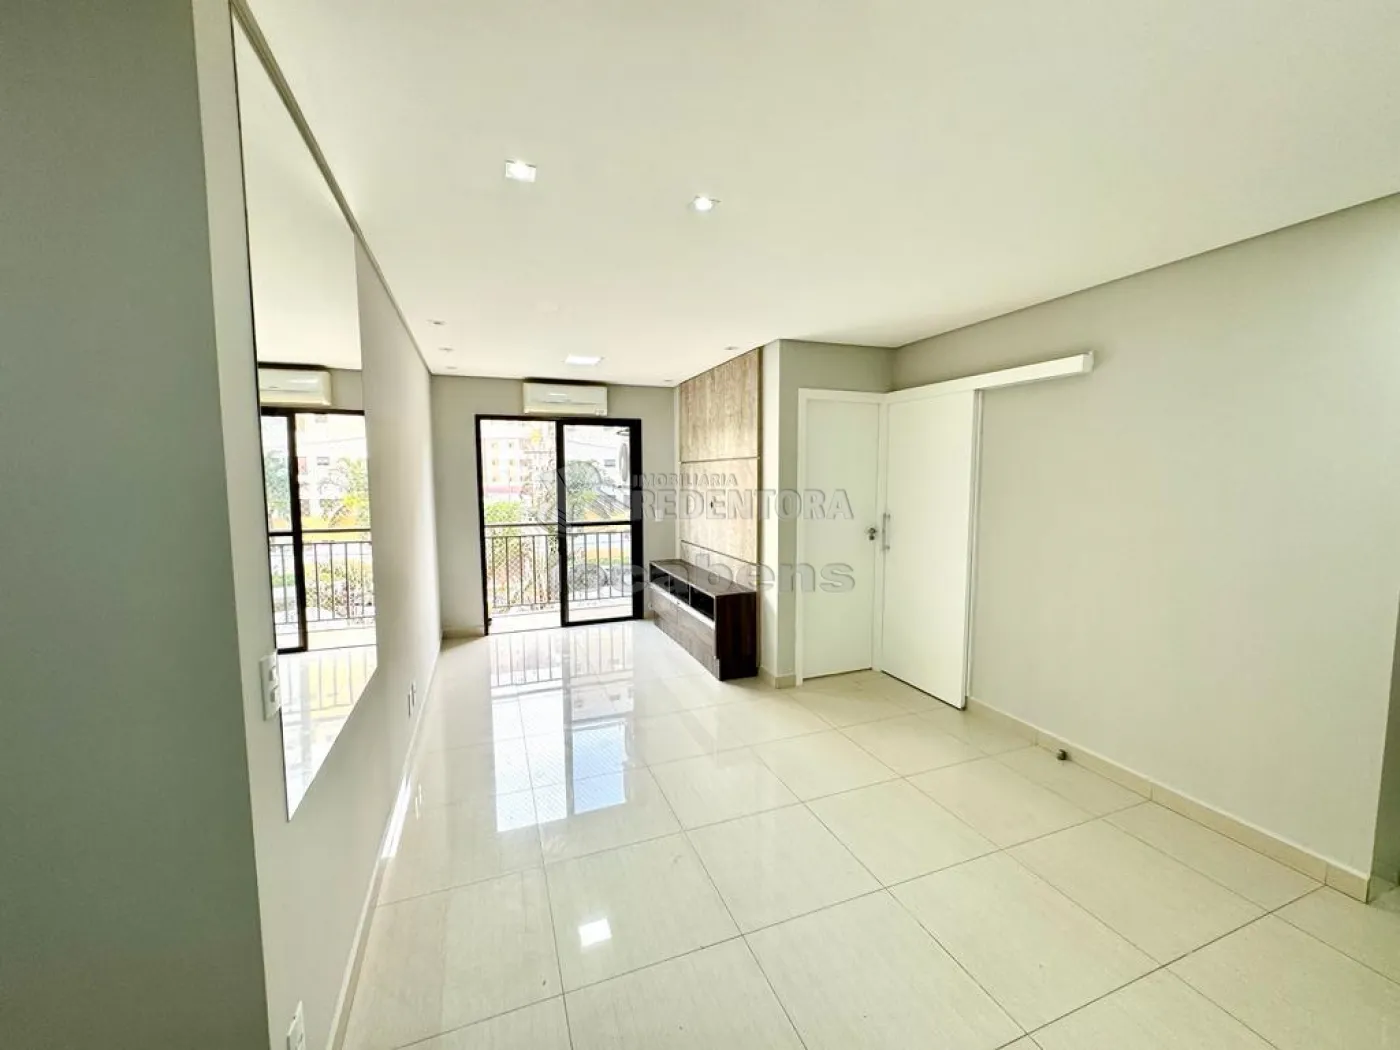 Comprar Apartamento / Padrão em São José do Rio Preto R$ 330.000,00 - Foto 2